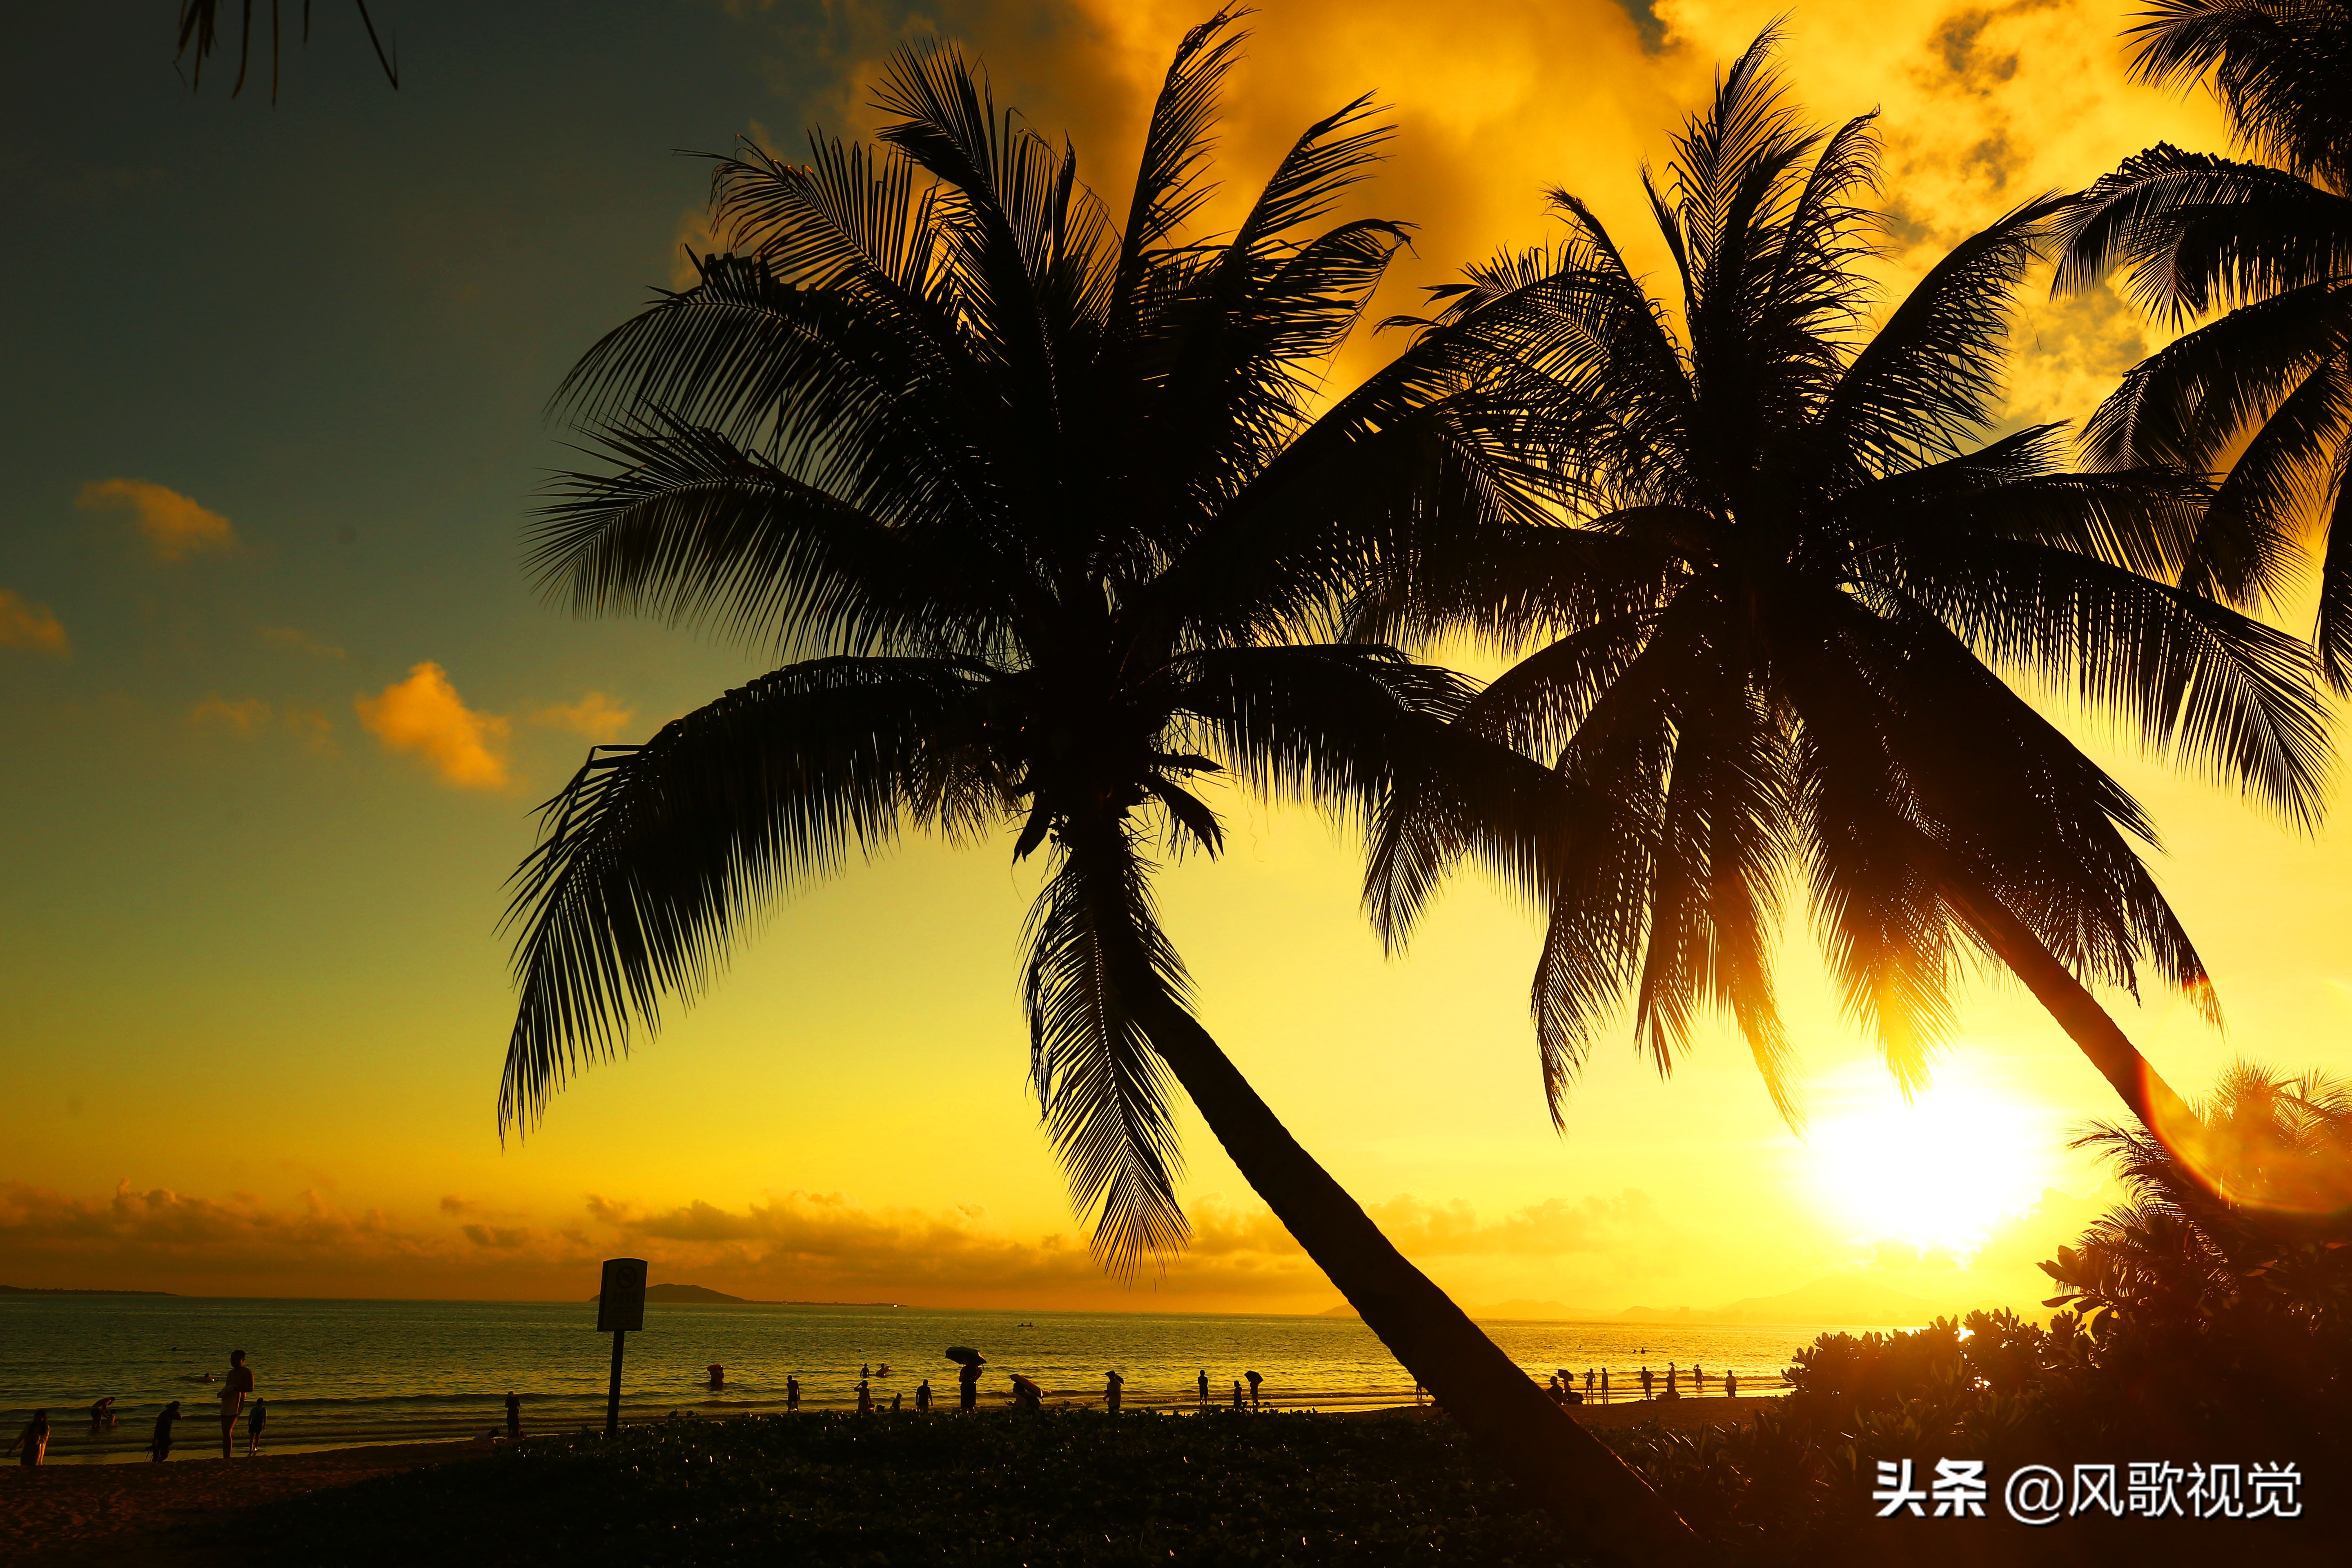 夏至,正是三亚旅游的热度,尤其是令人神往的海边夕阳美景